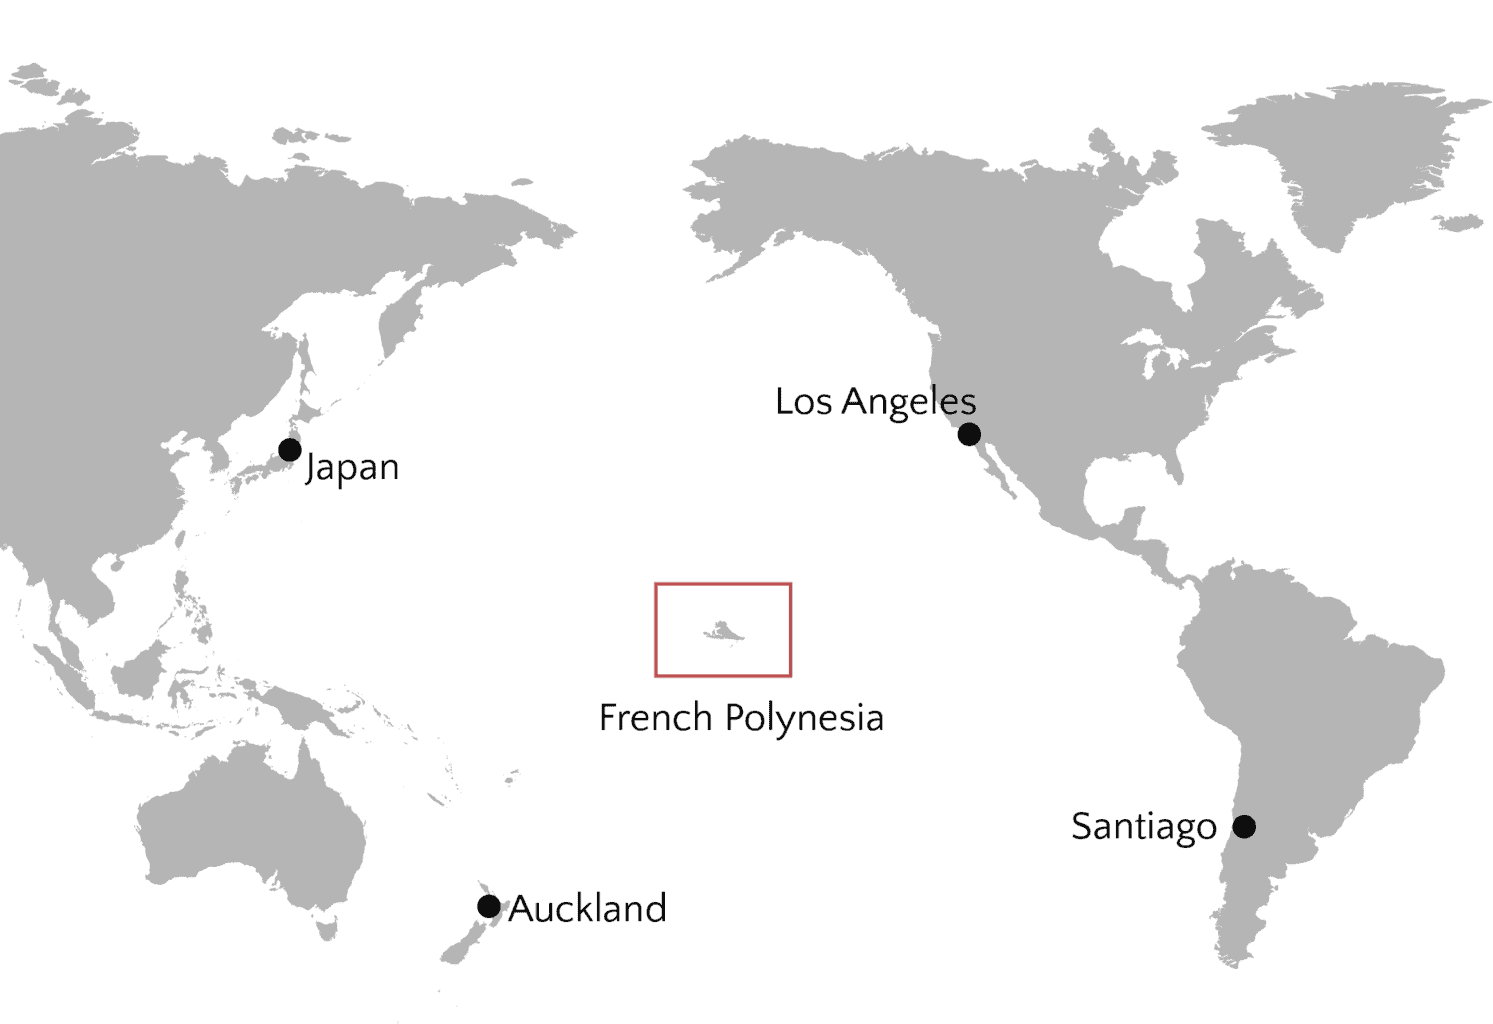 Kota mana yang merupakan bagian dari Polinesia Prancis?